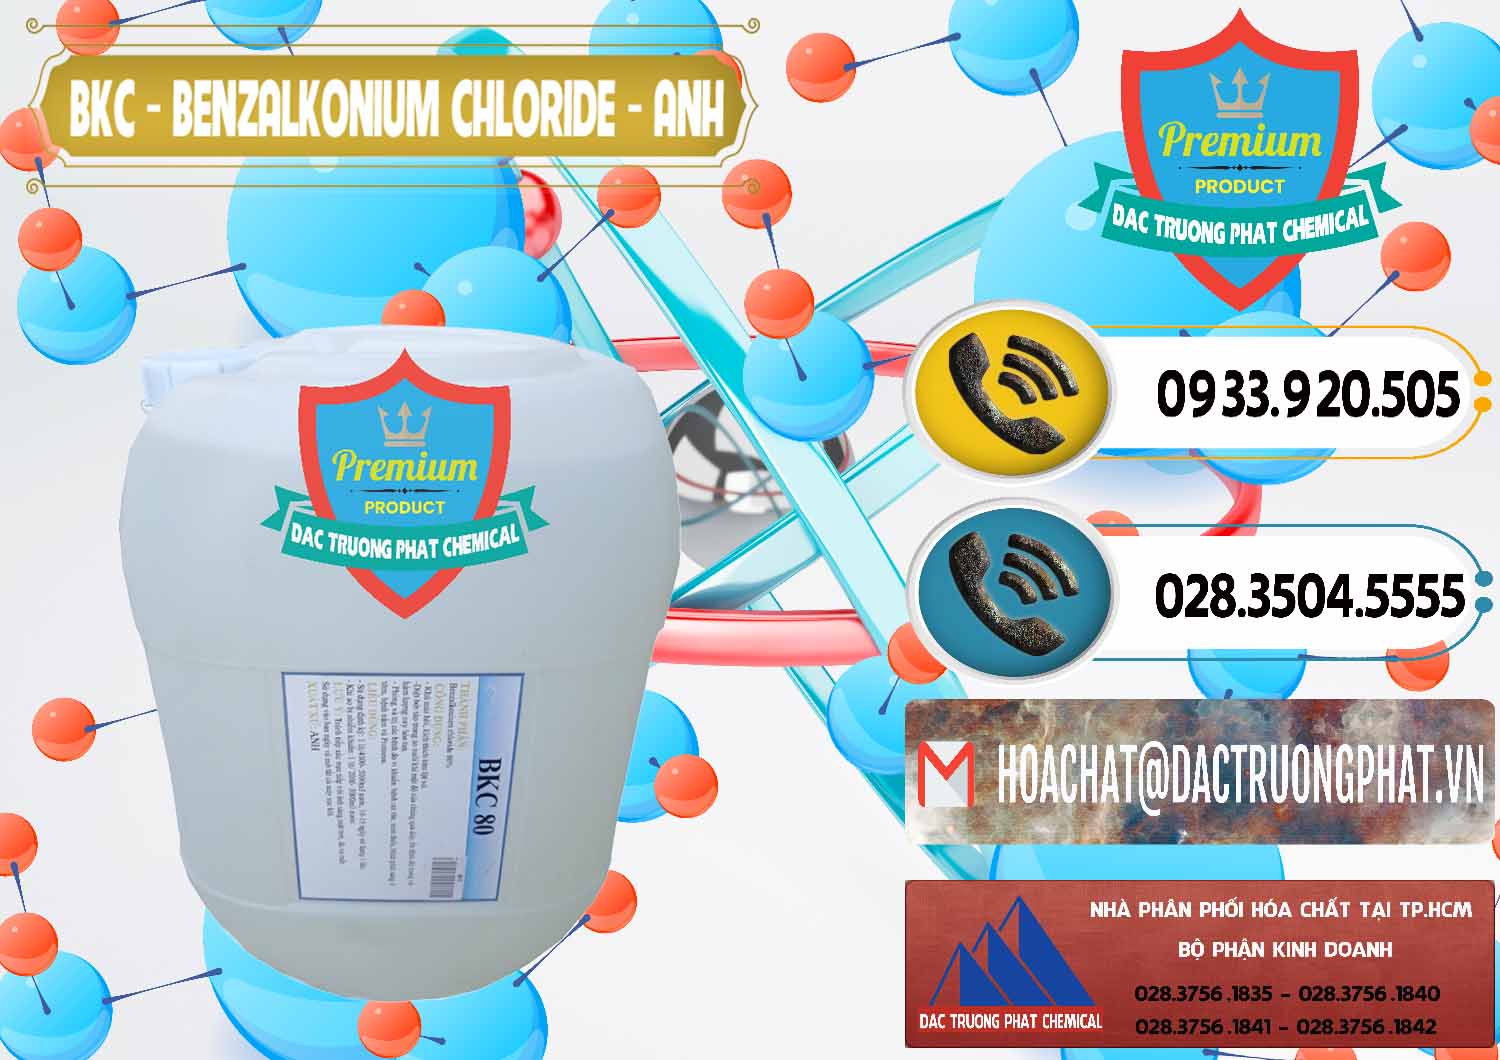 Công ty cung ứng ( bán ) BKC - Benzalkonium Chloride Anh Quốc Uk Kingdoms - 0415 - Công ty phân phối và cung cấp hóa chất tại TP.HCM - hoachatdetnhuom.vn